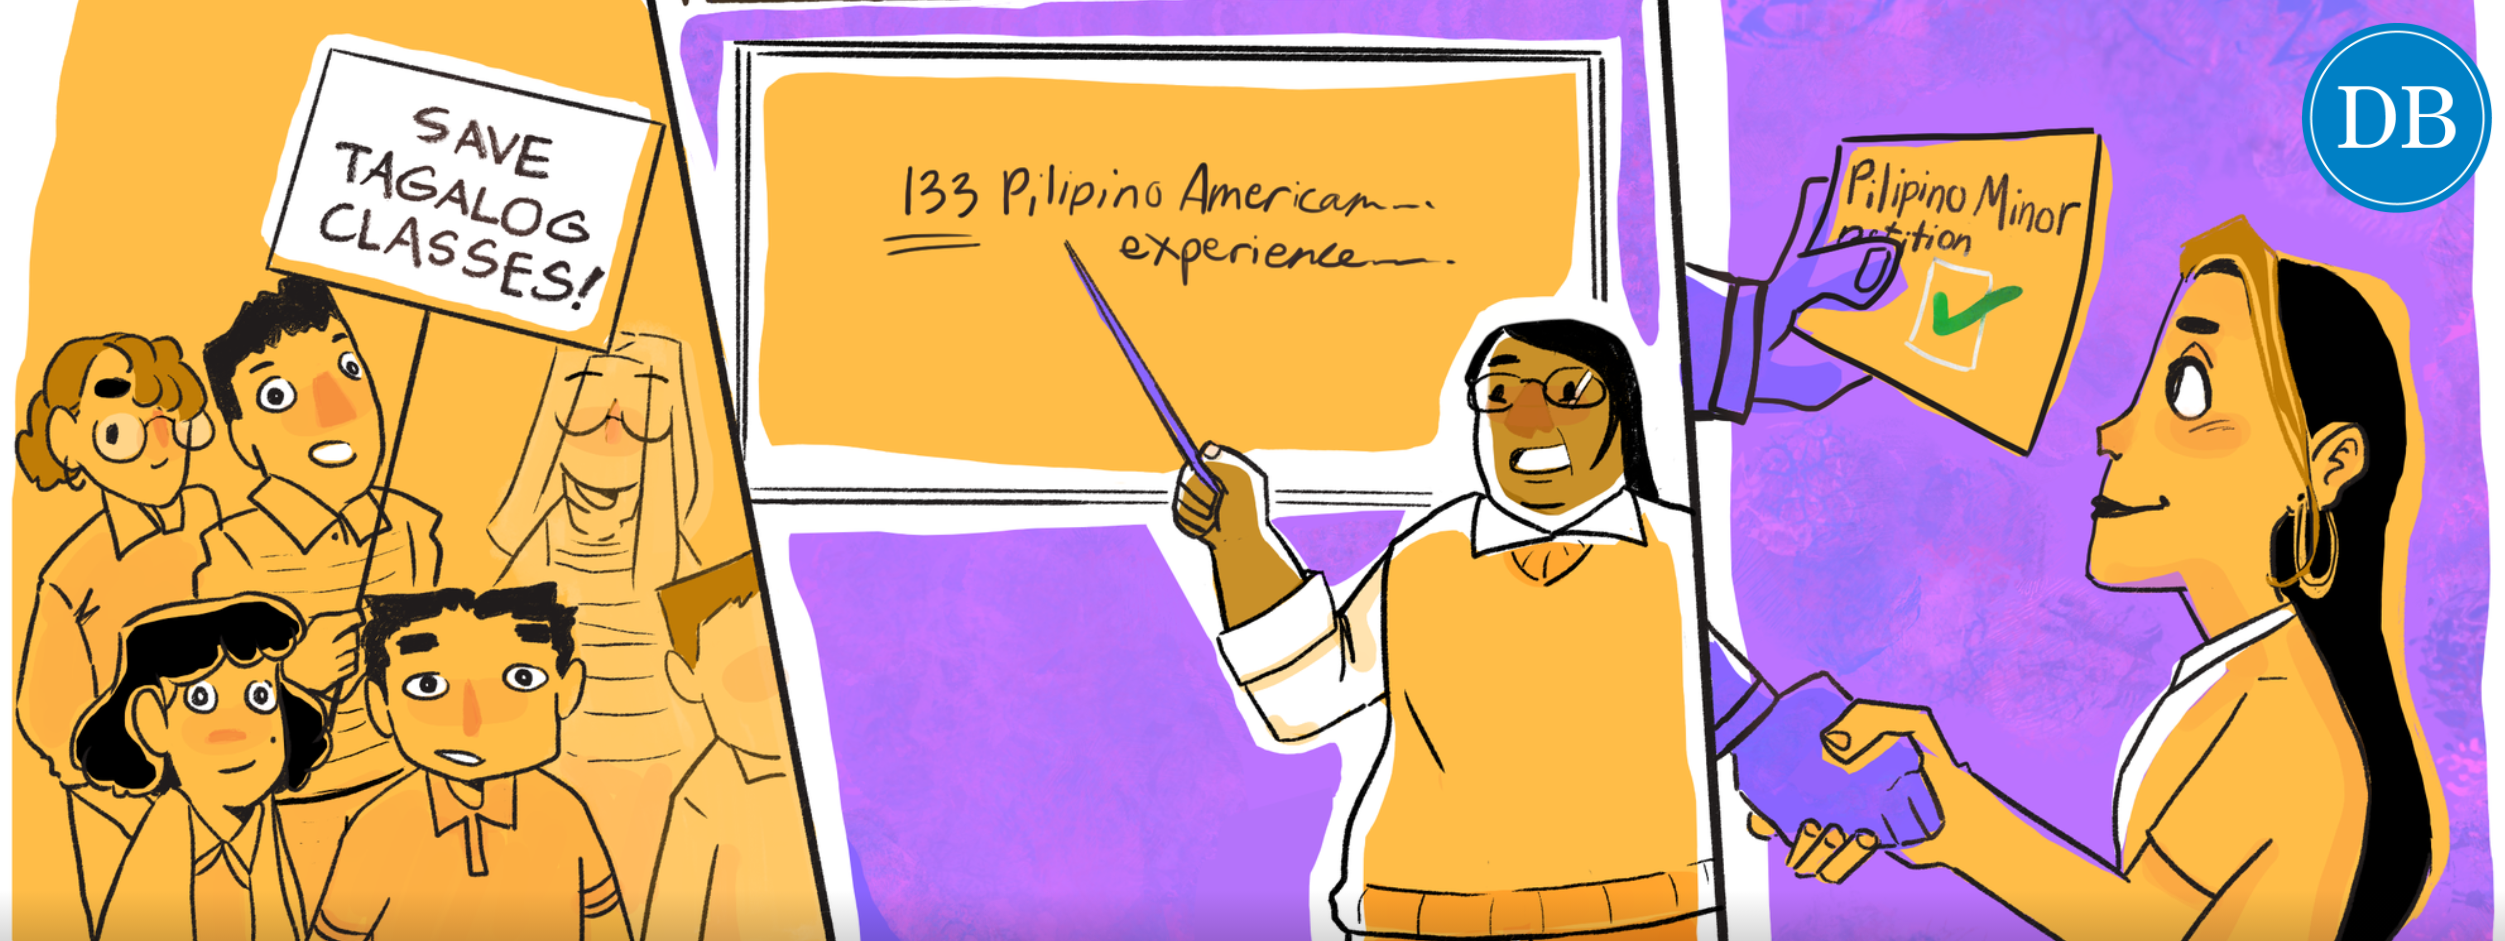 pilipino american studies